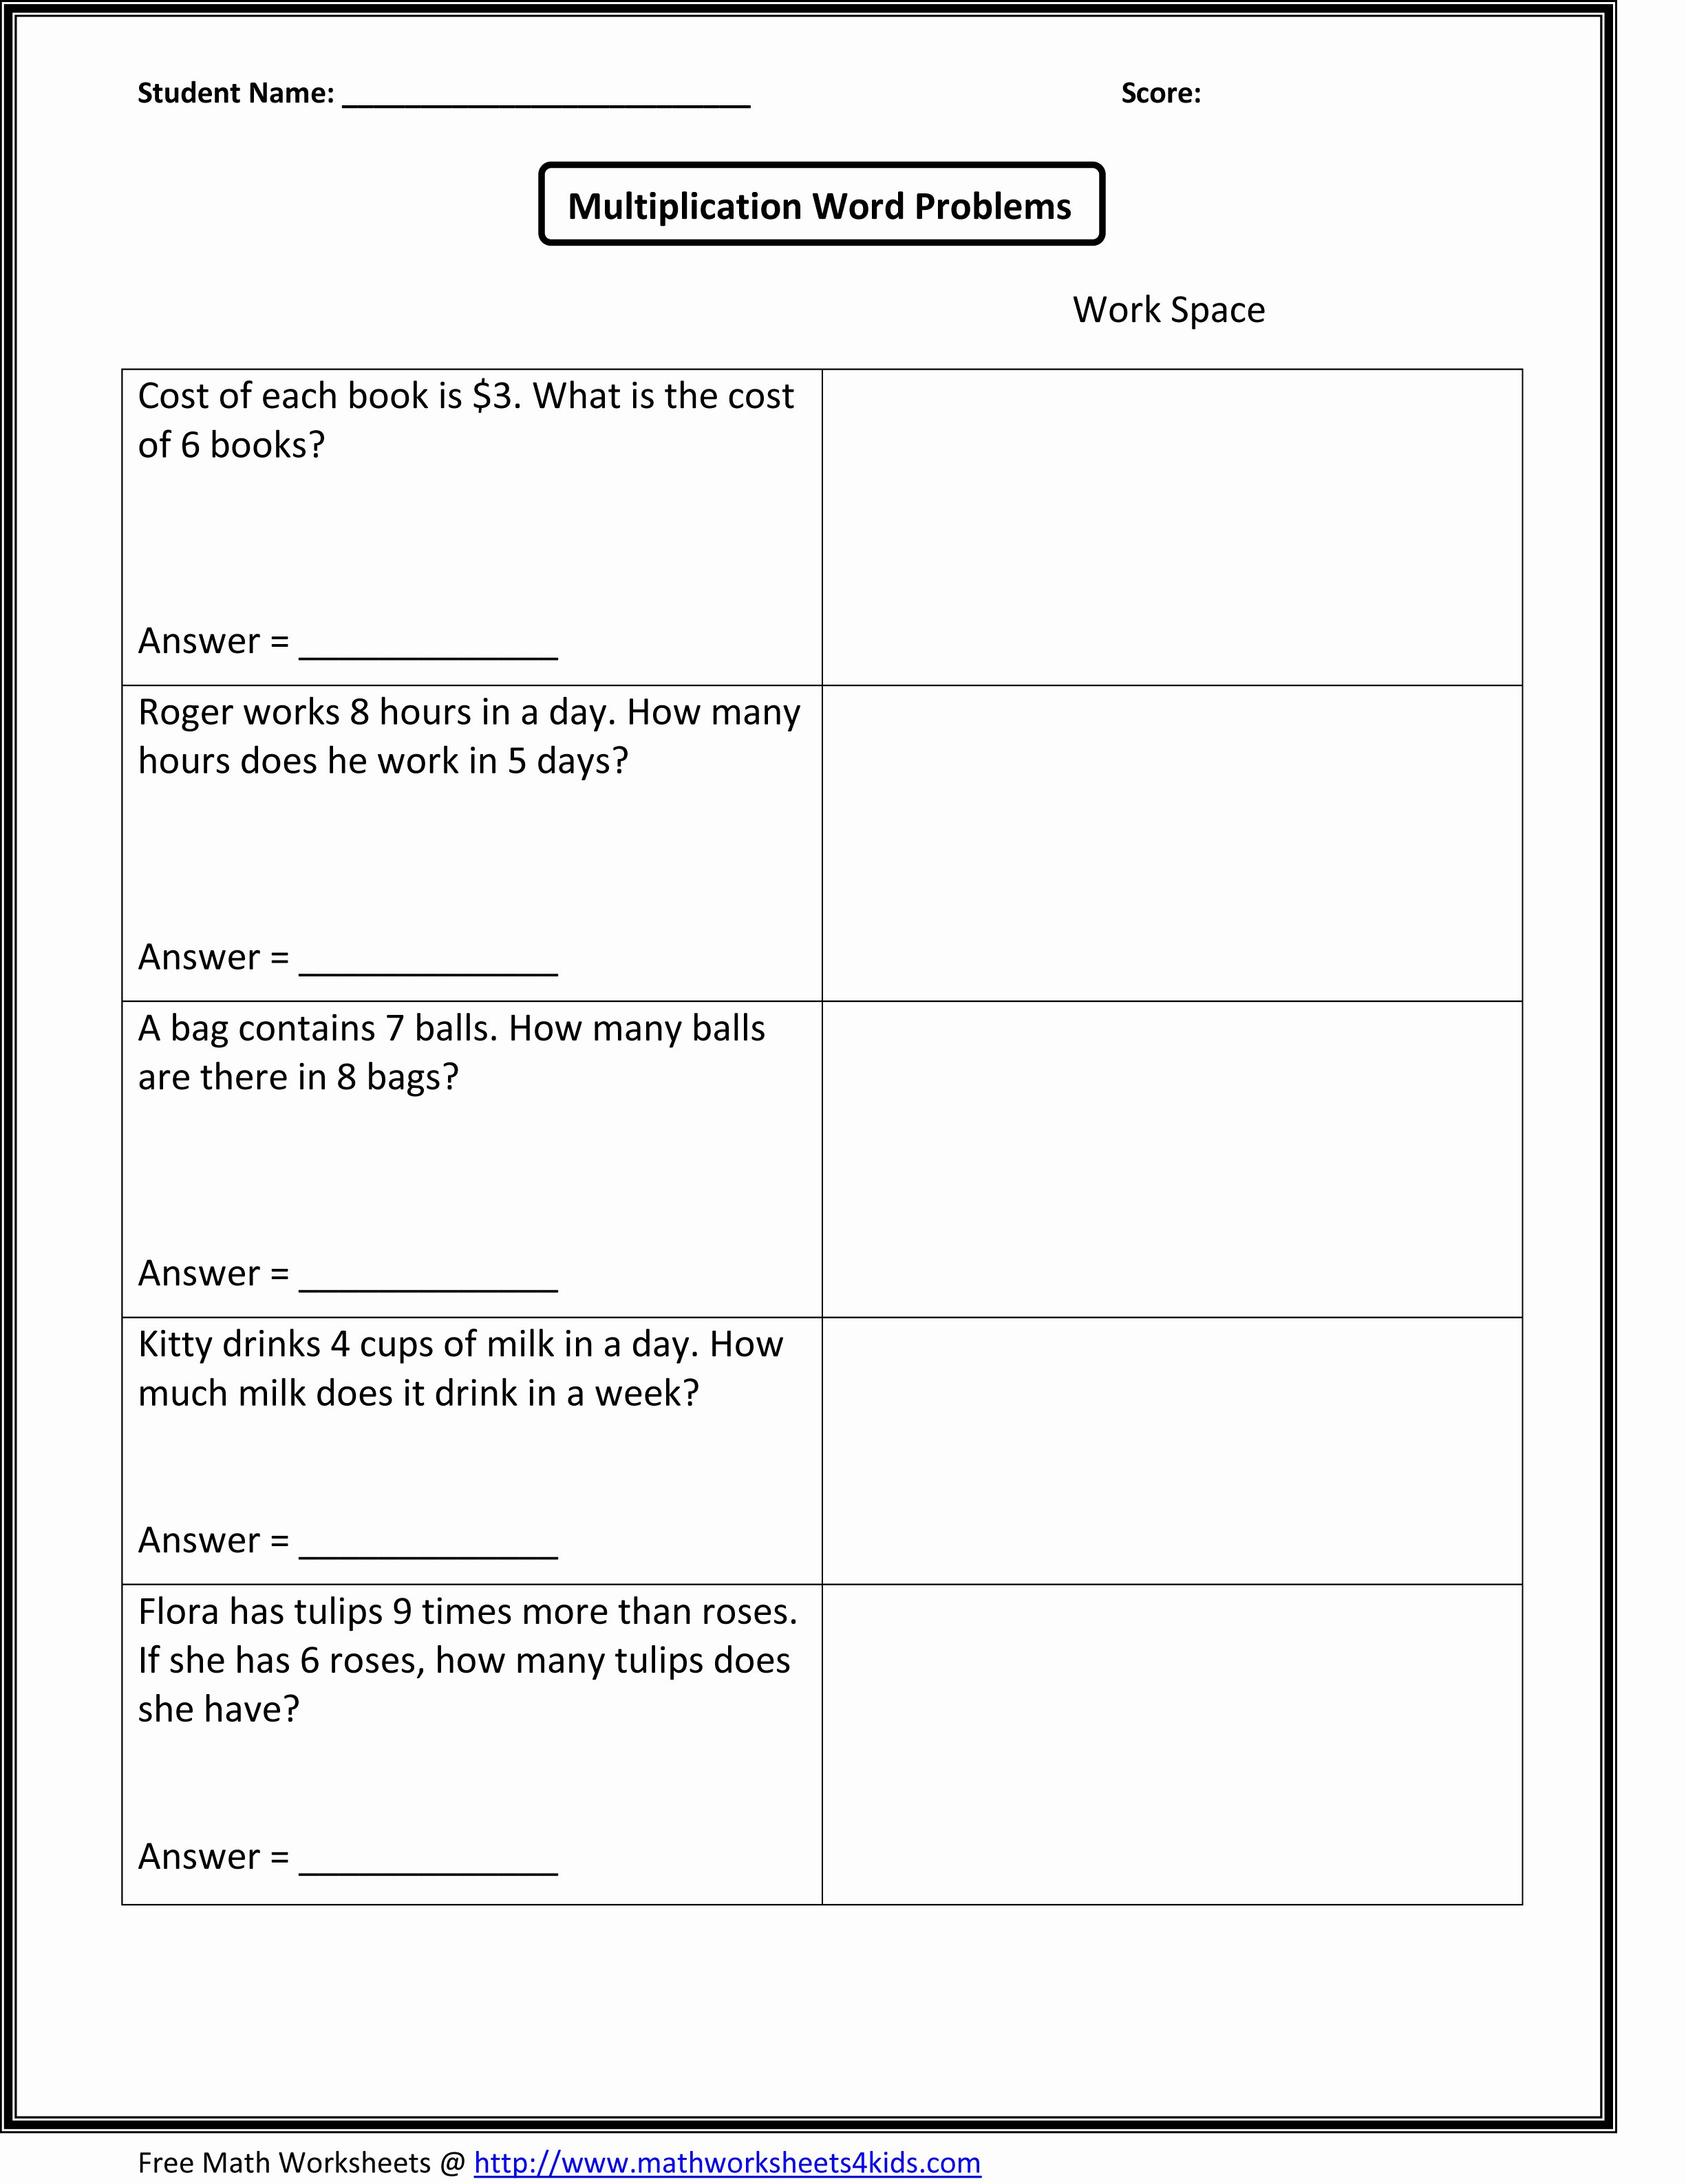 Multiplication Fraction Word Problems Worksheet Inspirational Second Grade Math Worksheets